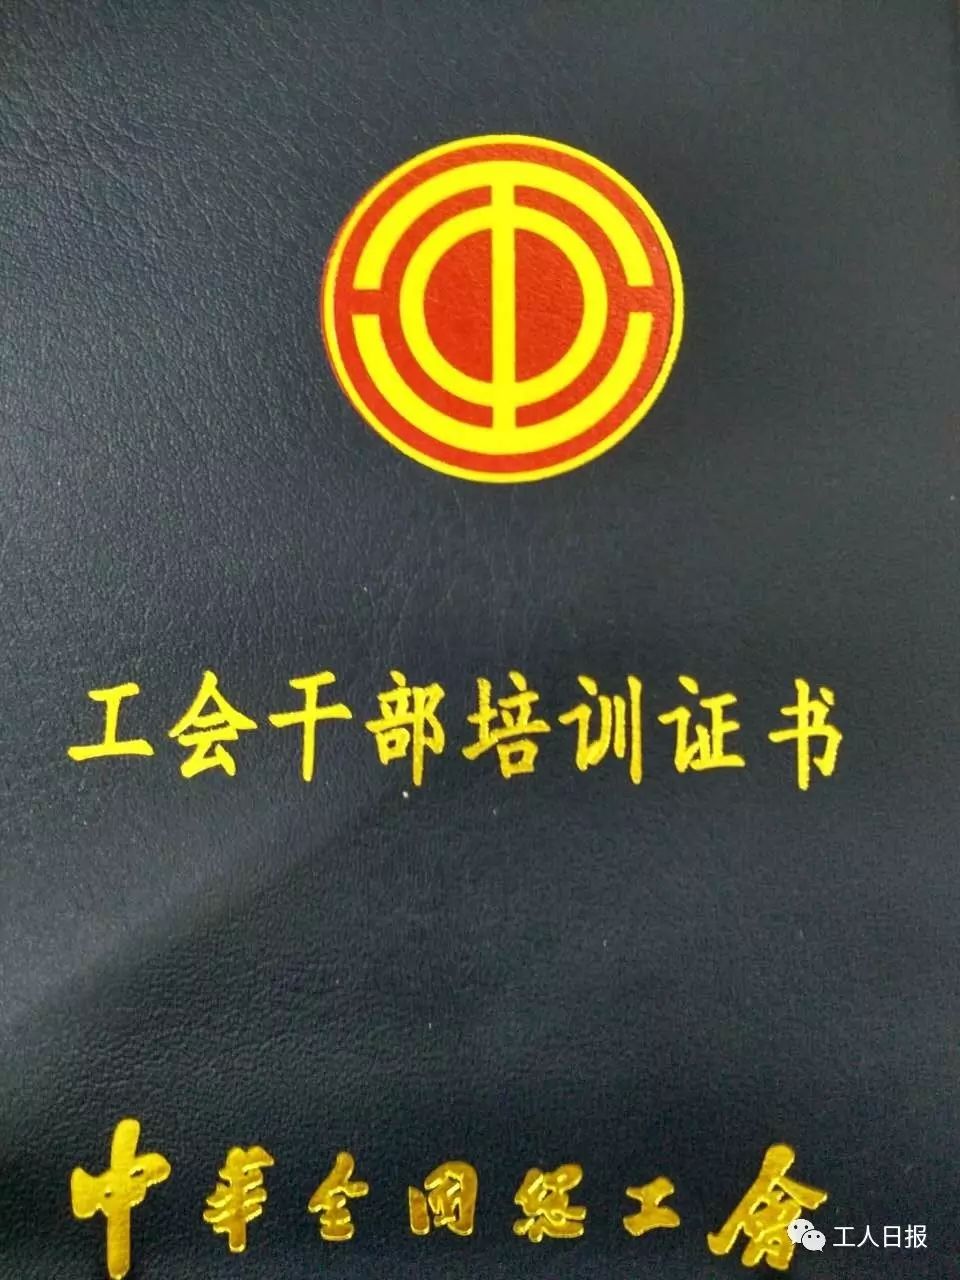 中国工会会徽为圆形, 红色底,选用 "中","工"两字组成 金色主体图案